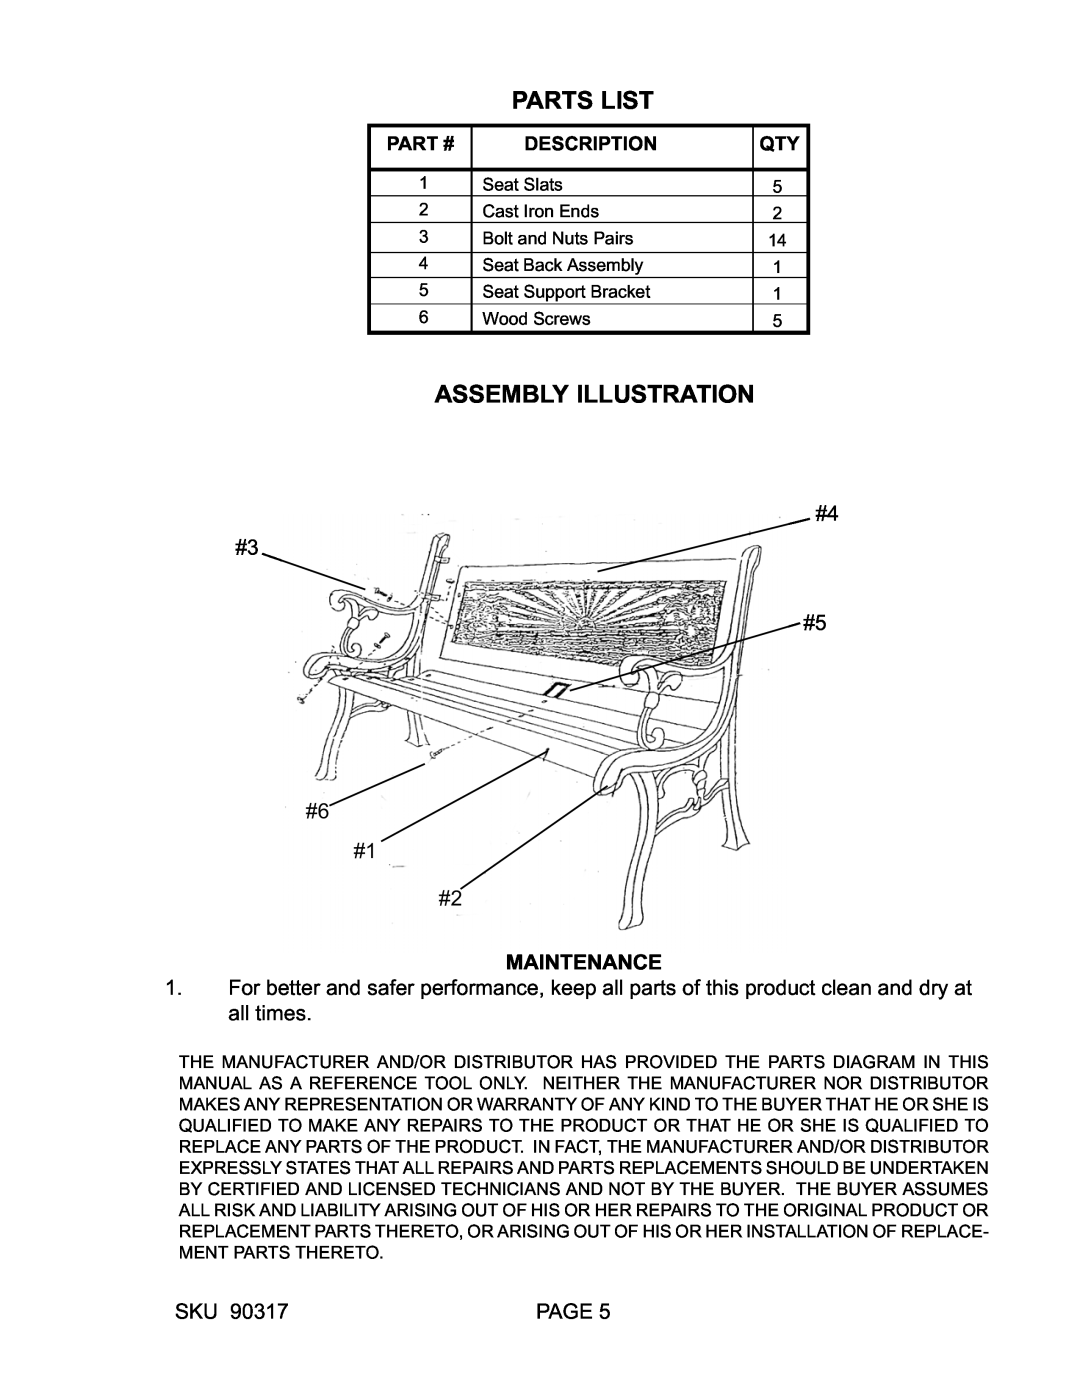 Butler 90317 manual #4 #3 #5 #6 #1 #2 MAINTENANCE, Part #, Description, Parts List, Assembly Illustration, Page 